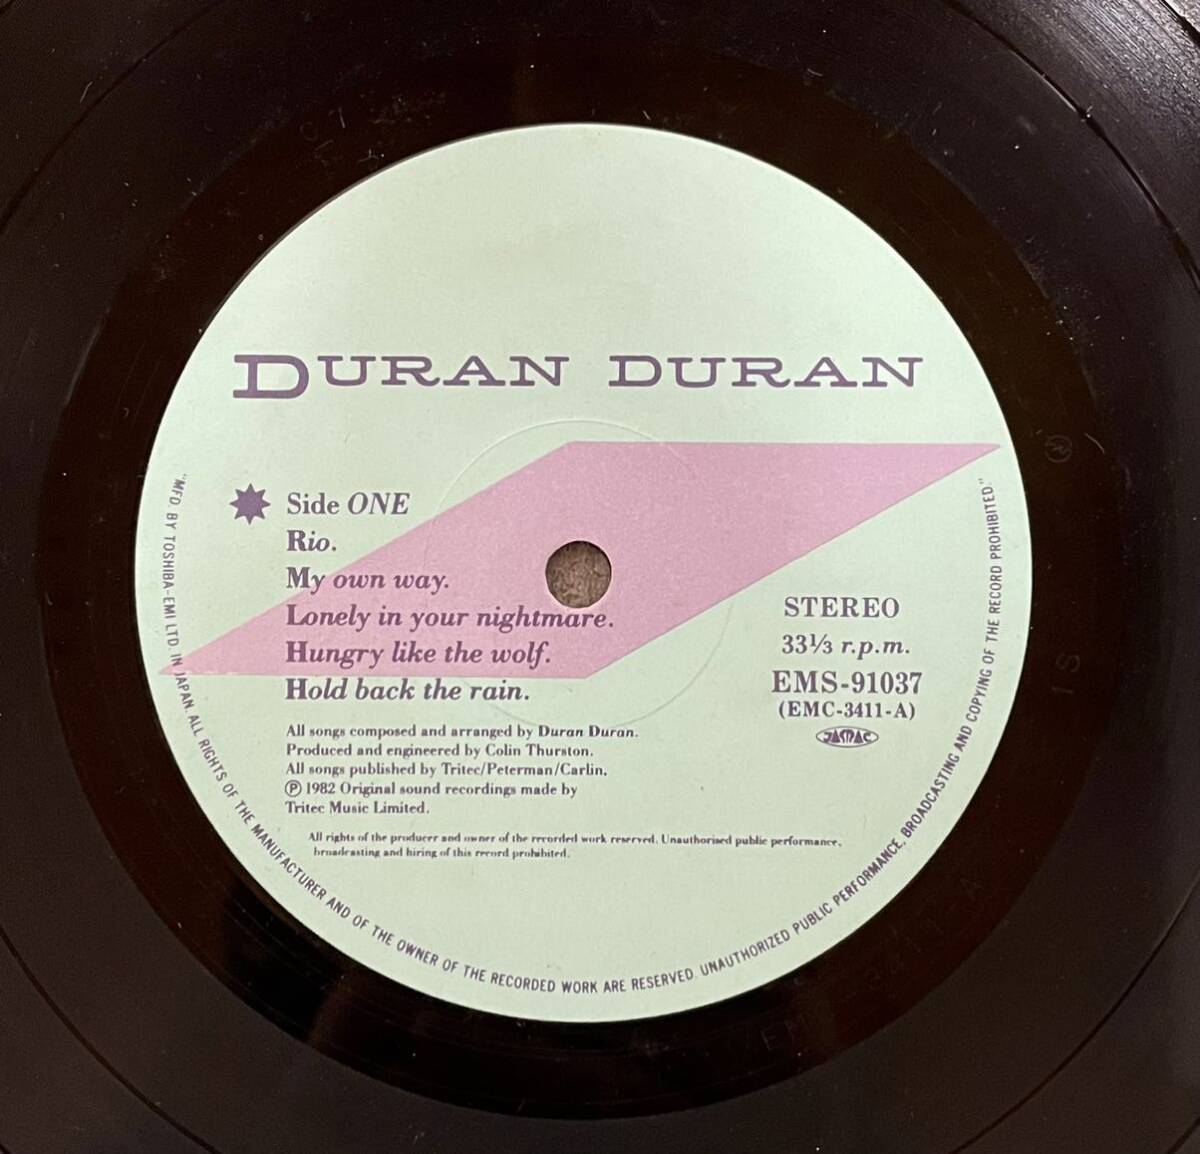 RCD495 DURANDURAN RIO デュラン・デュラン リオ LP レコード 帯付 ロック_画像3